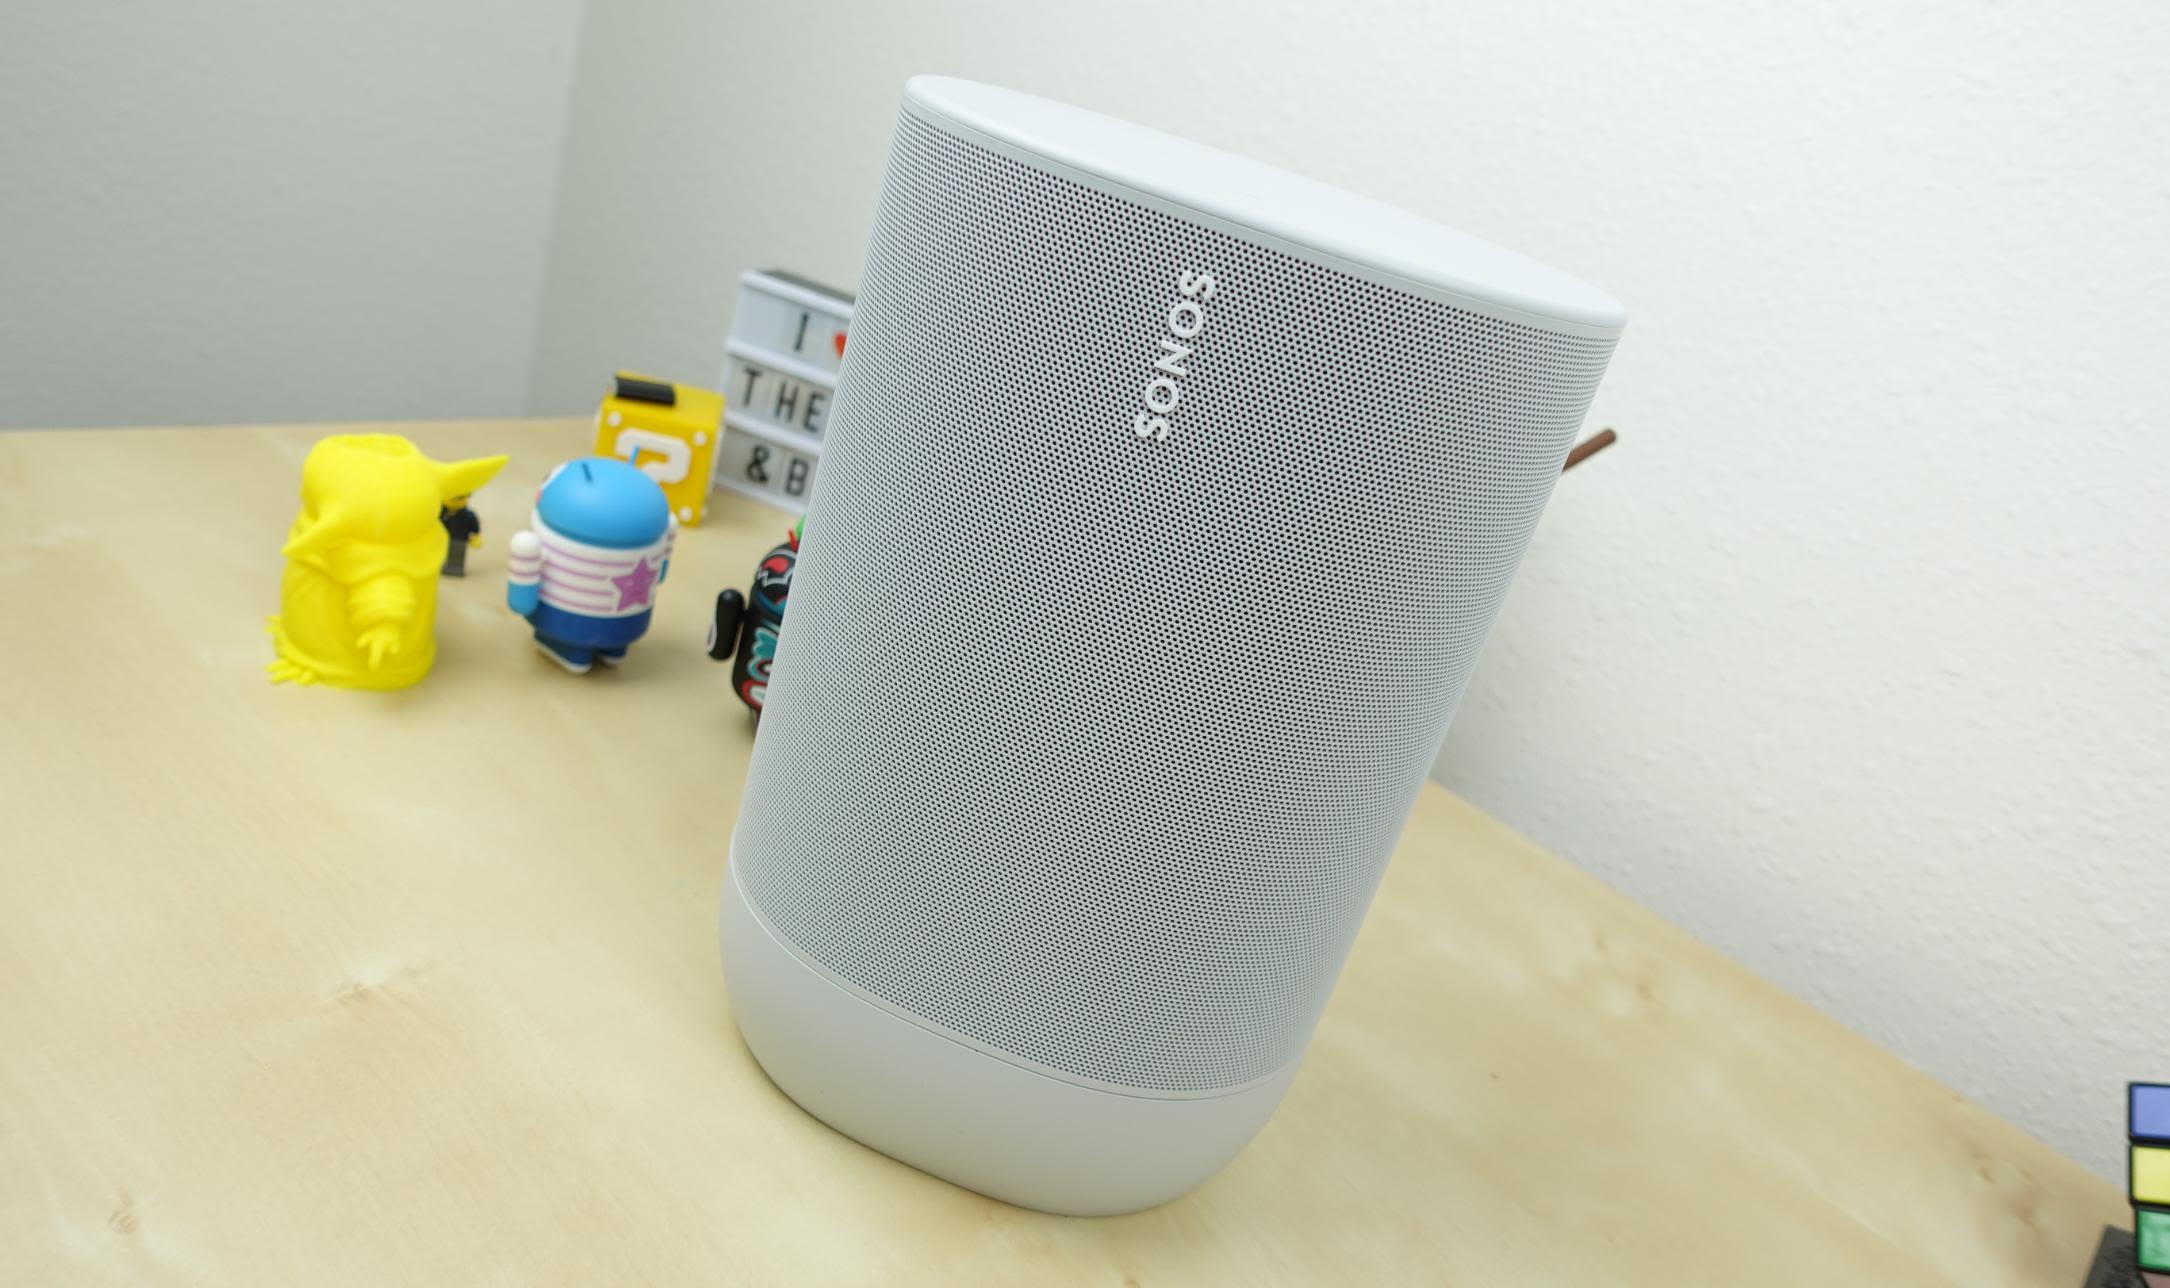 Sonos finally makes a portable Bluetooth speaker—meet the Sonos Move